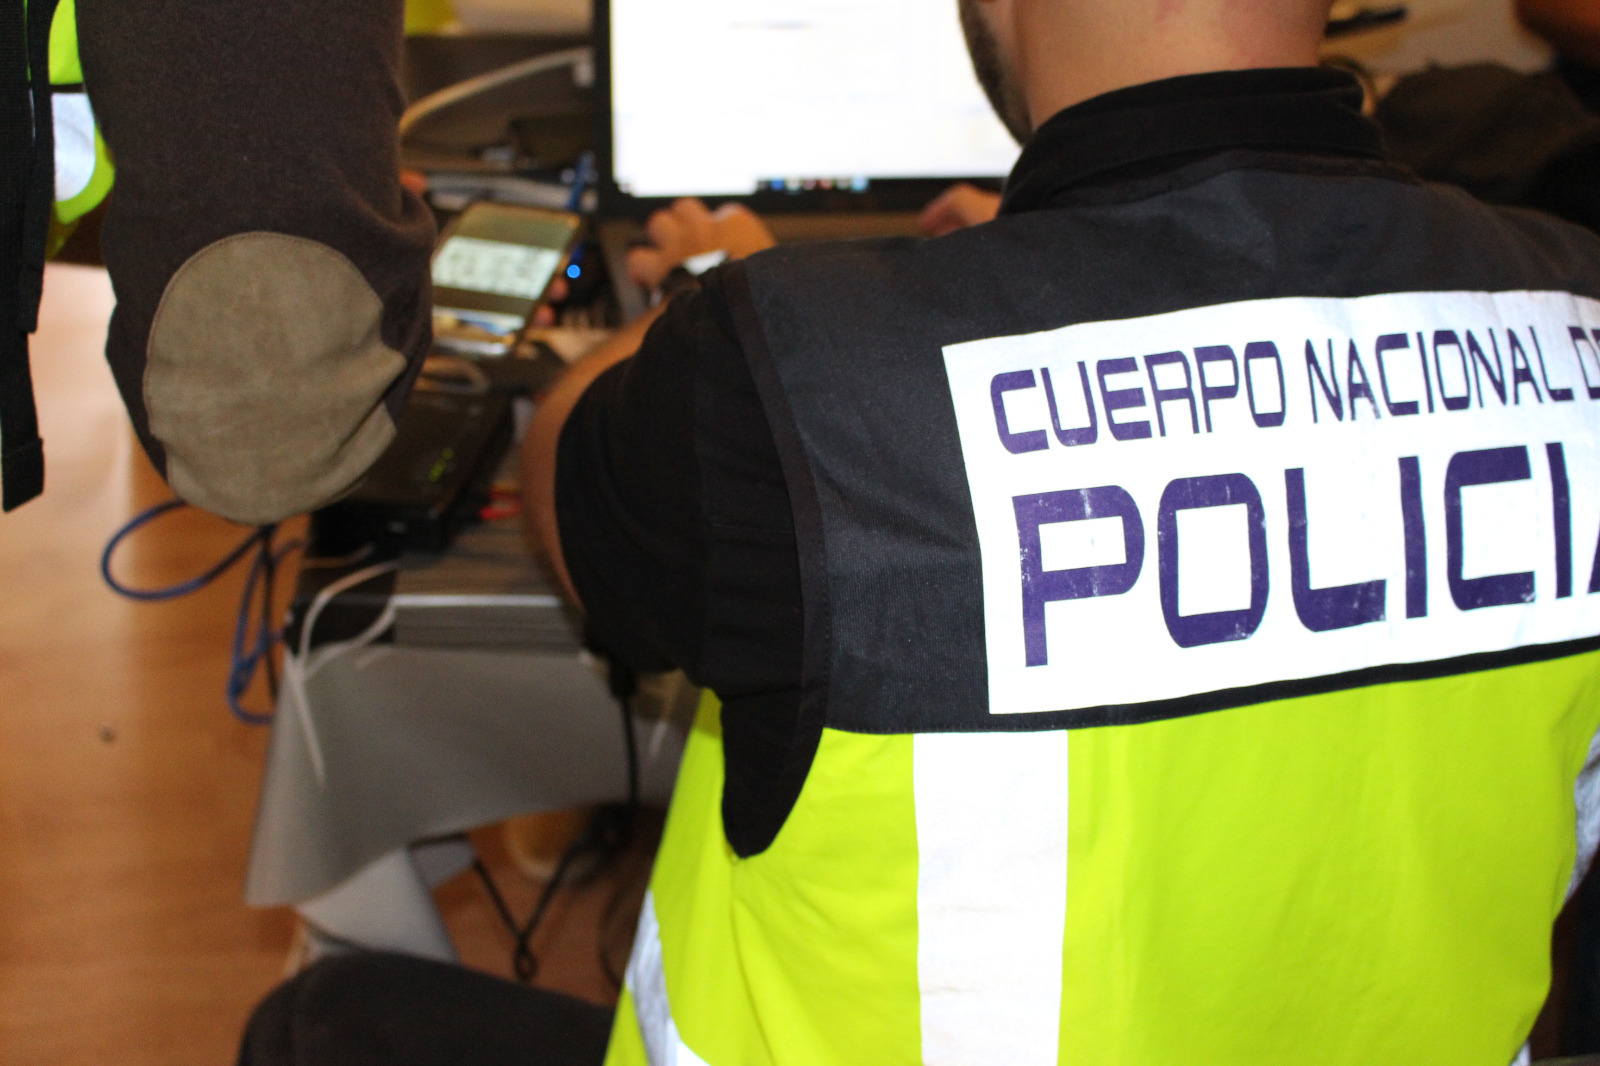 La Policia Nacional al costat de l’Ajuntament de Torrent oferirà xarrades sobre ciberseguretat i ciberdelinqüència